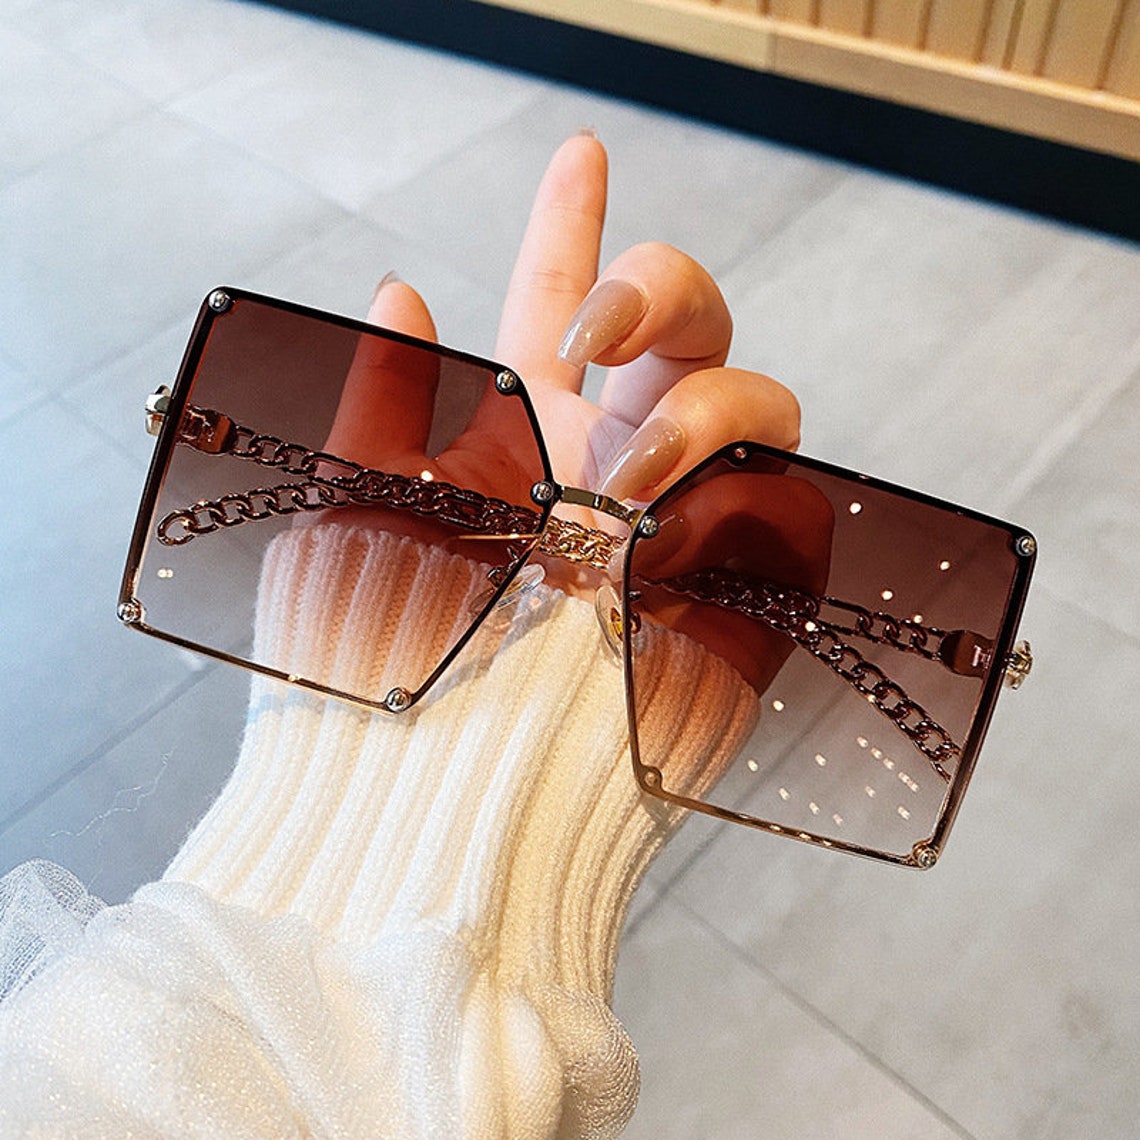 Fashion eye glasses | Etsy